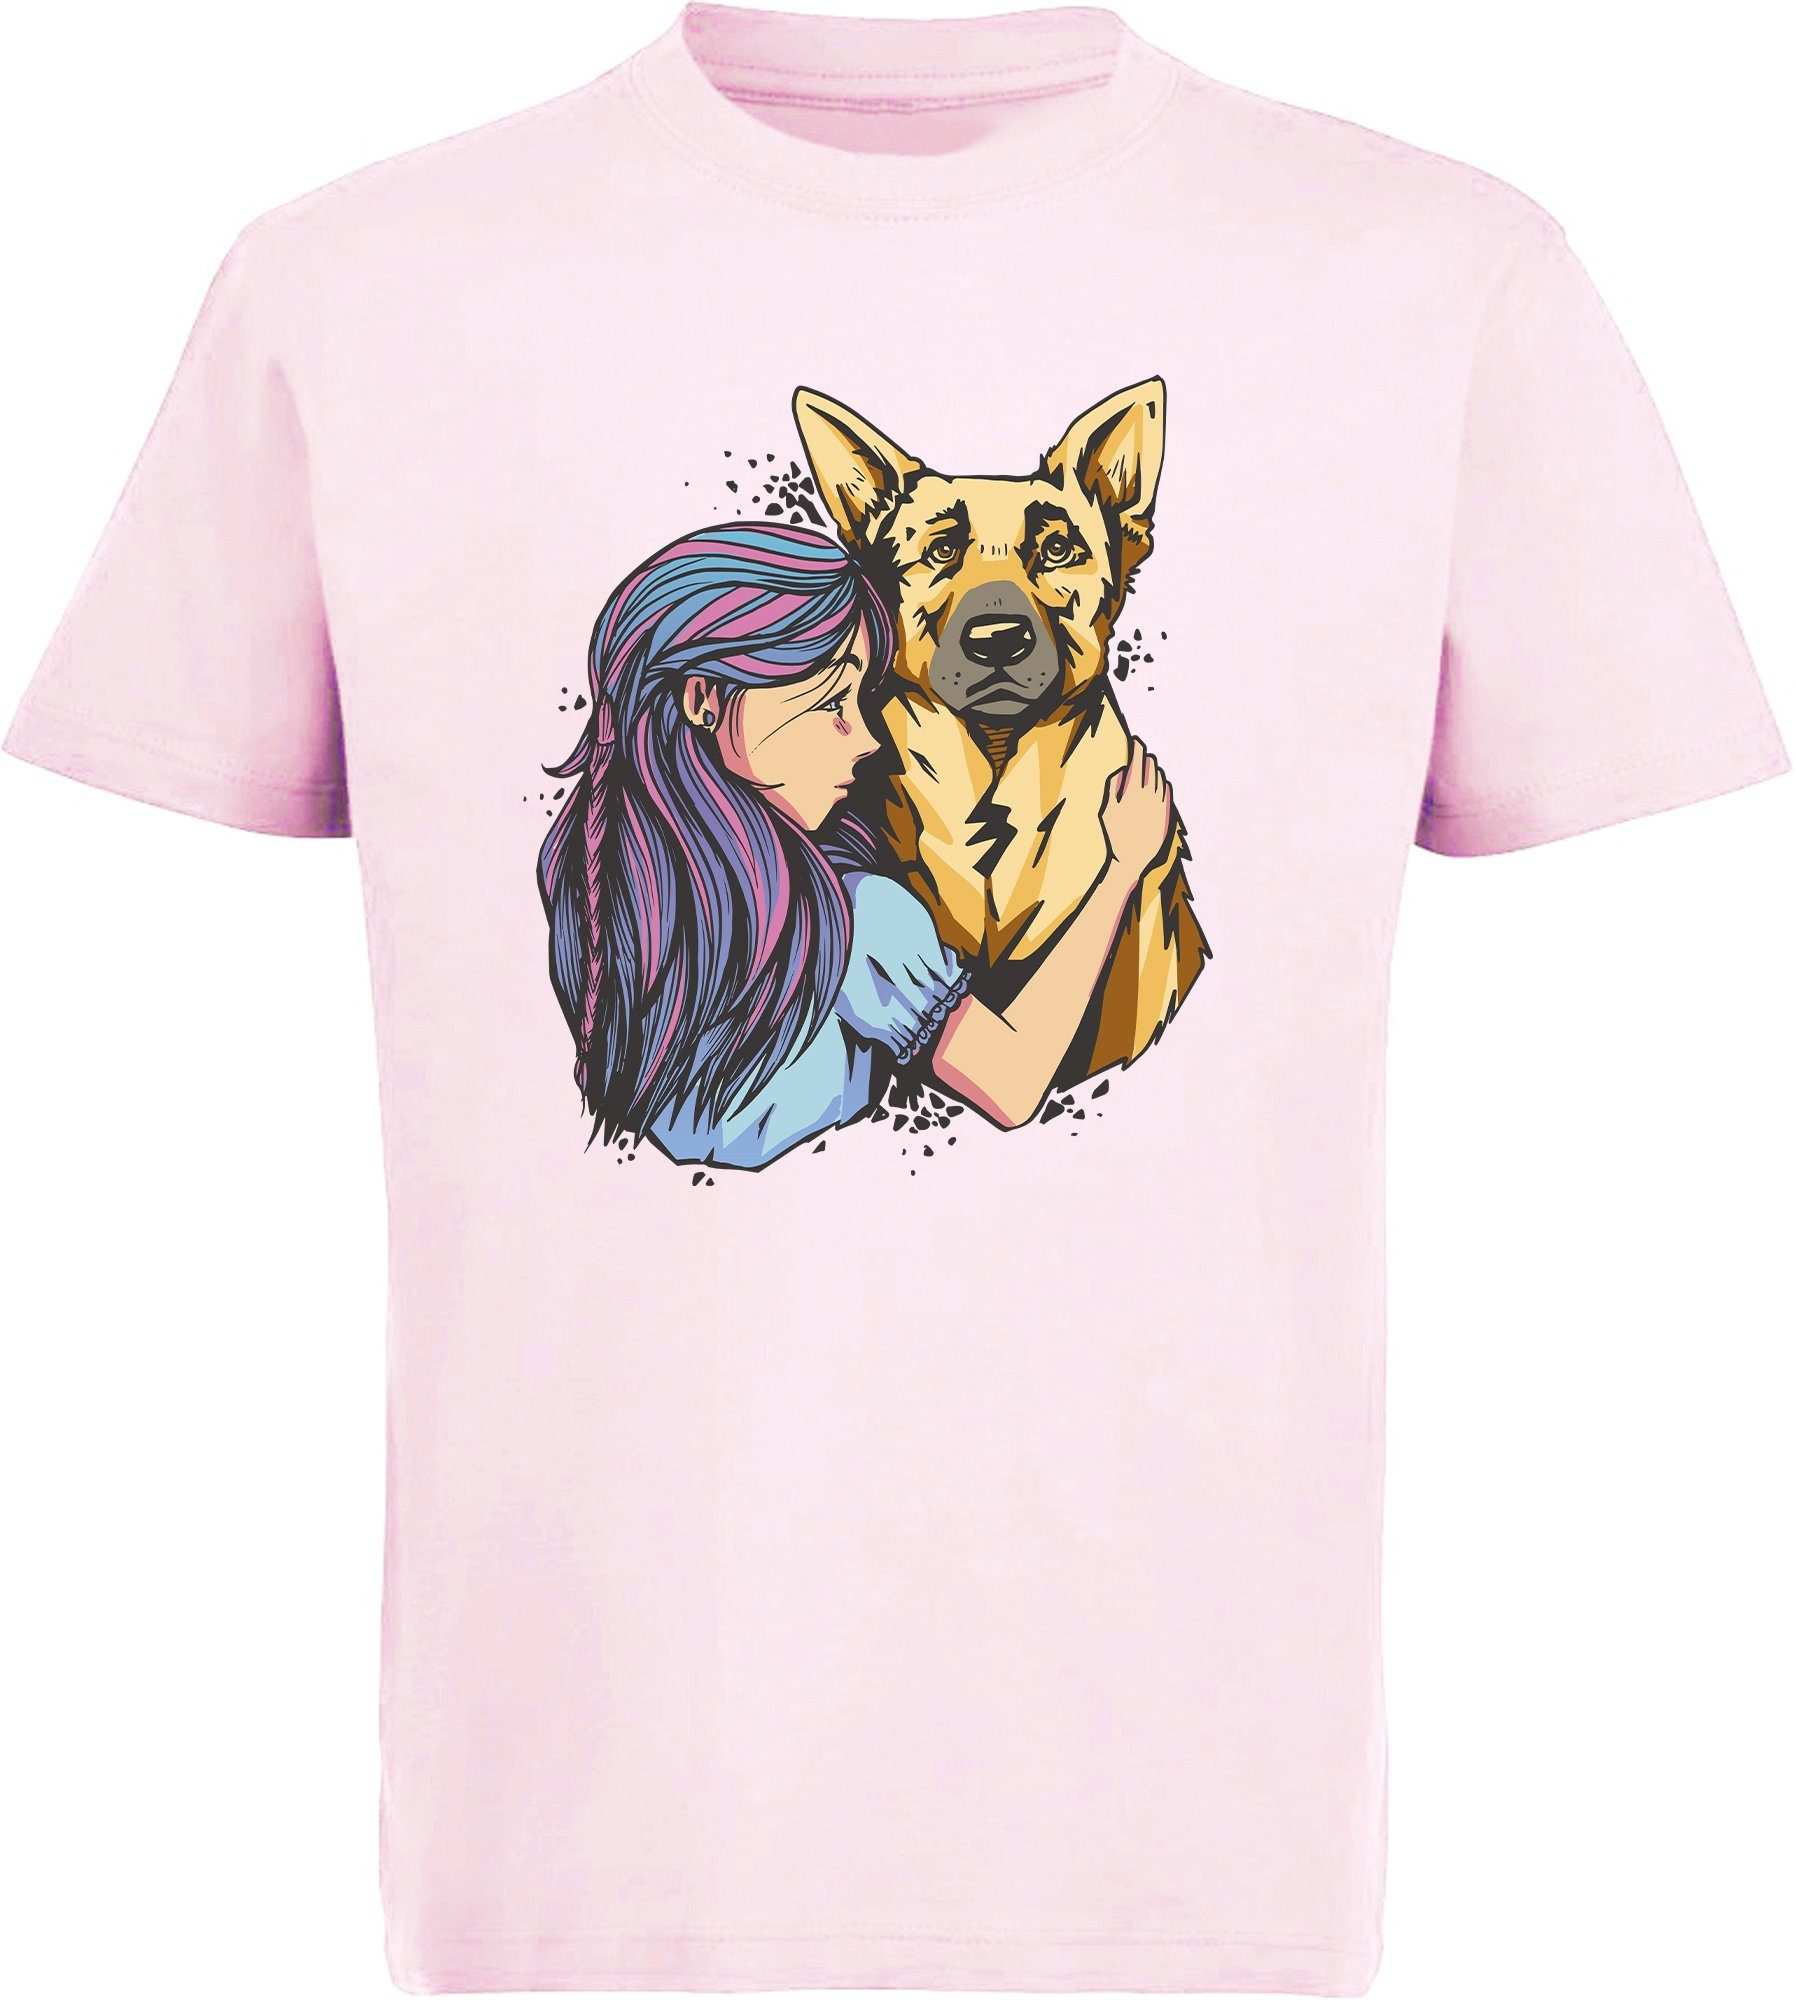 MyDesign24 T-Shirt Kinder Hunde Print Shirt bedruckt - Schäferhund mit Mädchen Baumwollshirt mit Aufdruck, i258 rosa | T-Shirts